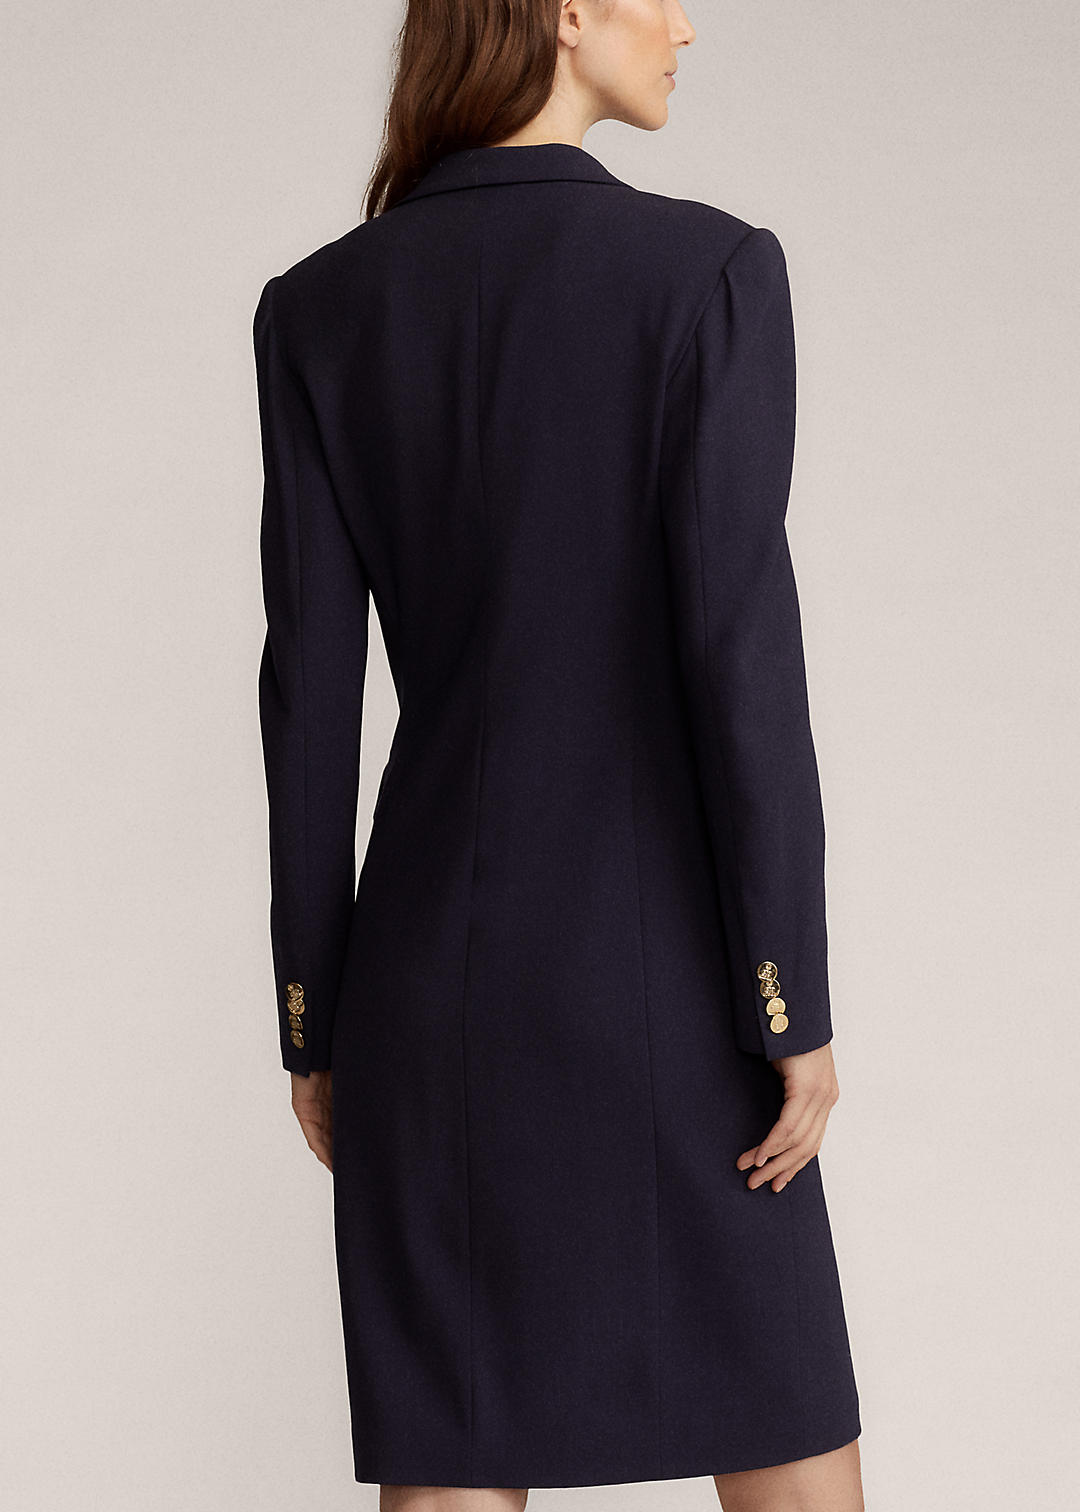 Ralph Lauren Collection Wellesly Wool-Blend Dress 5